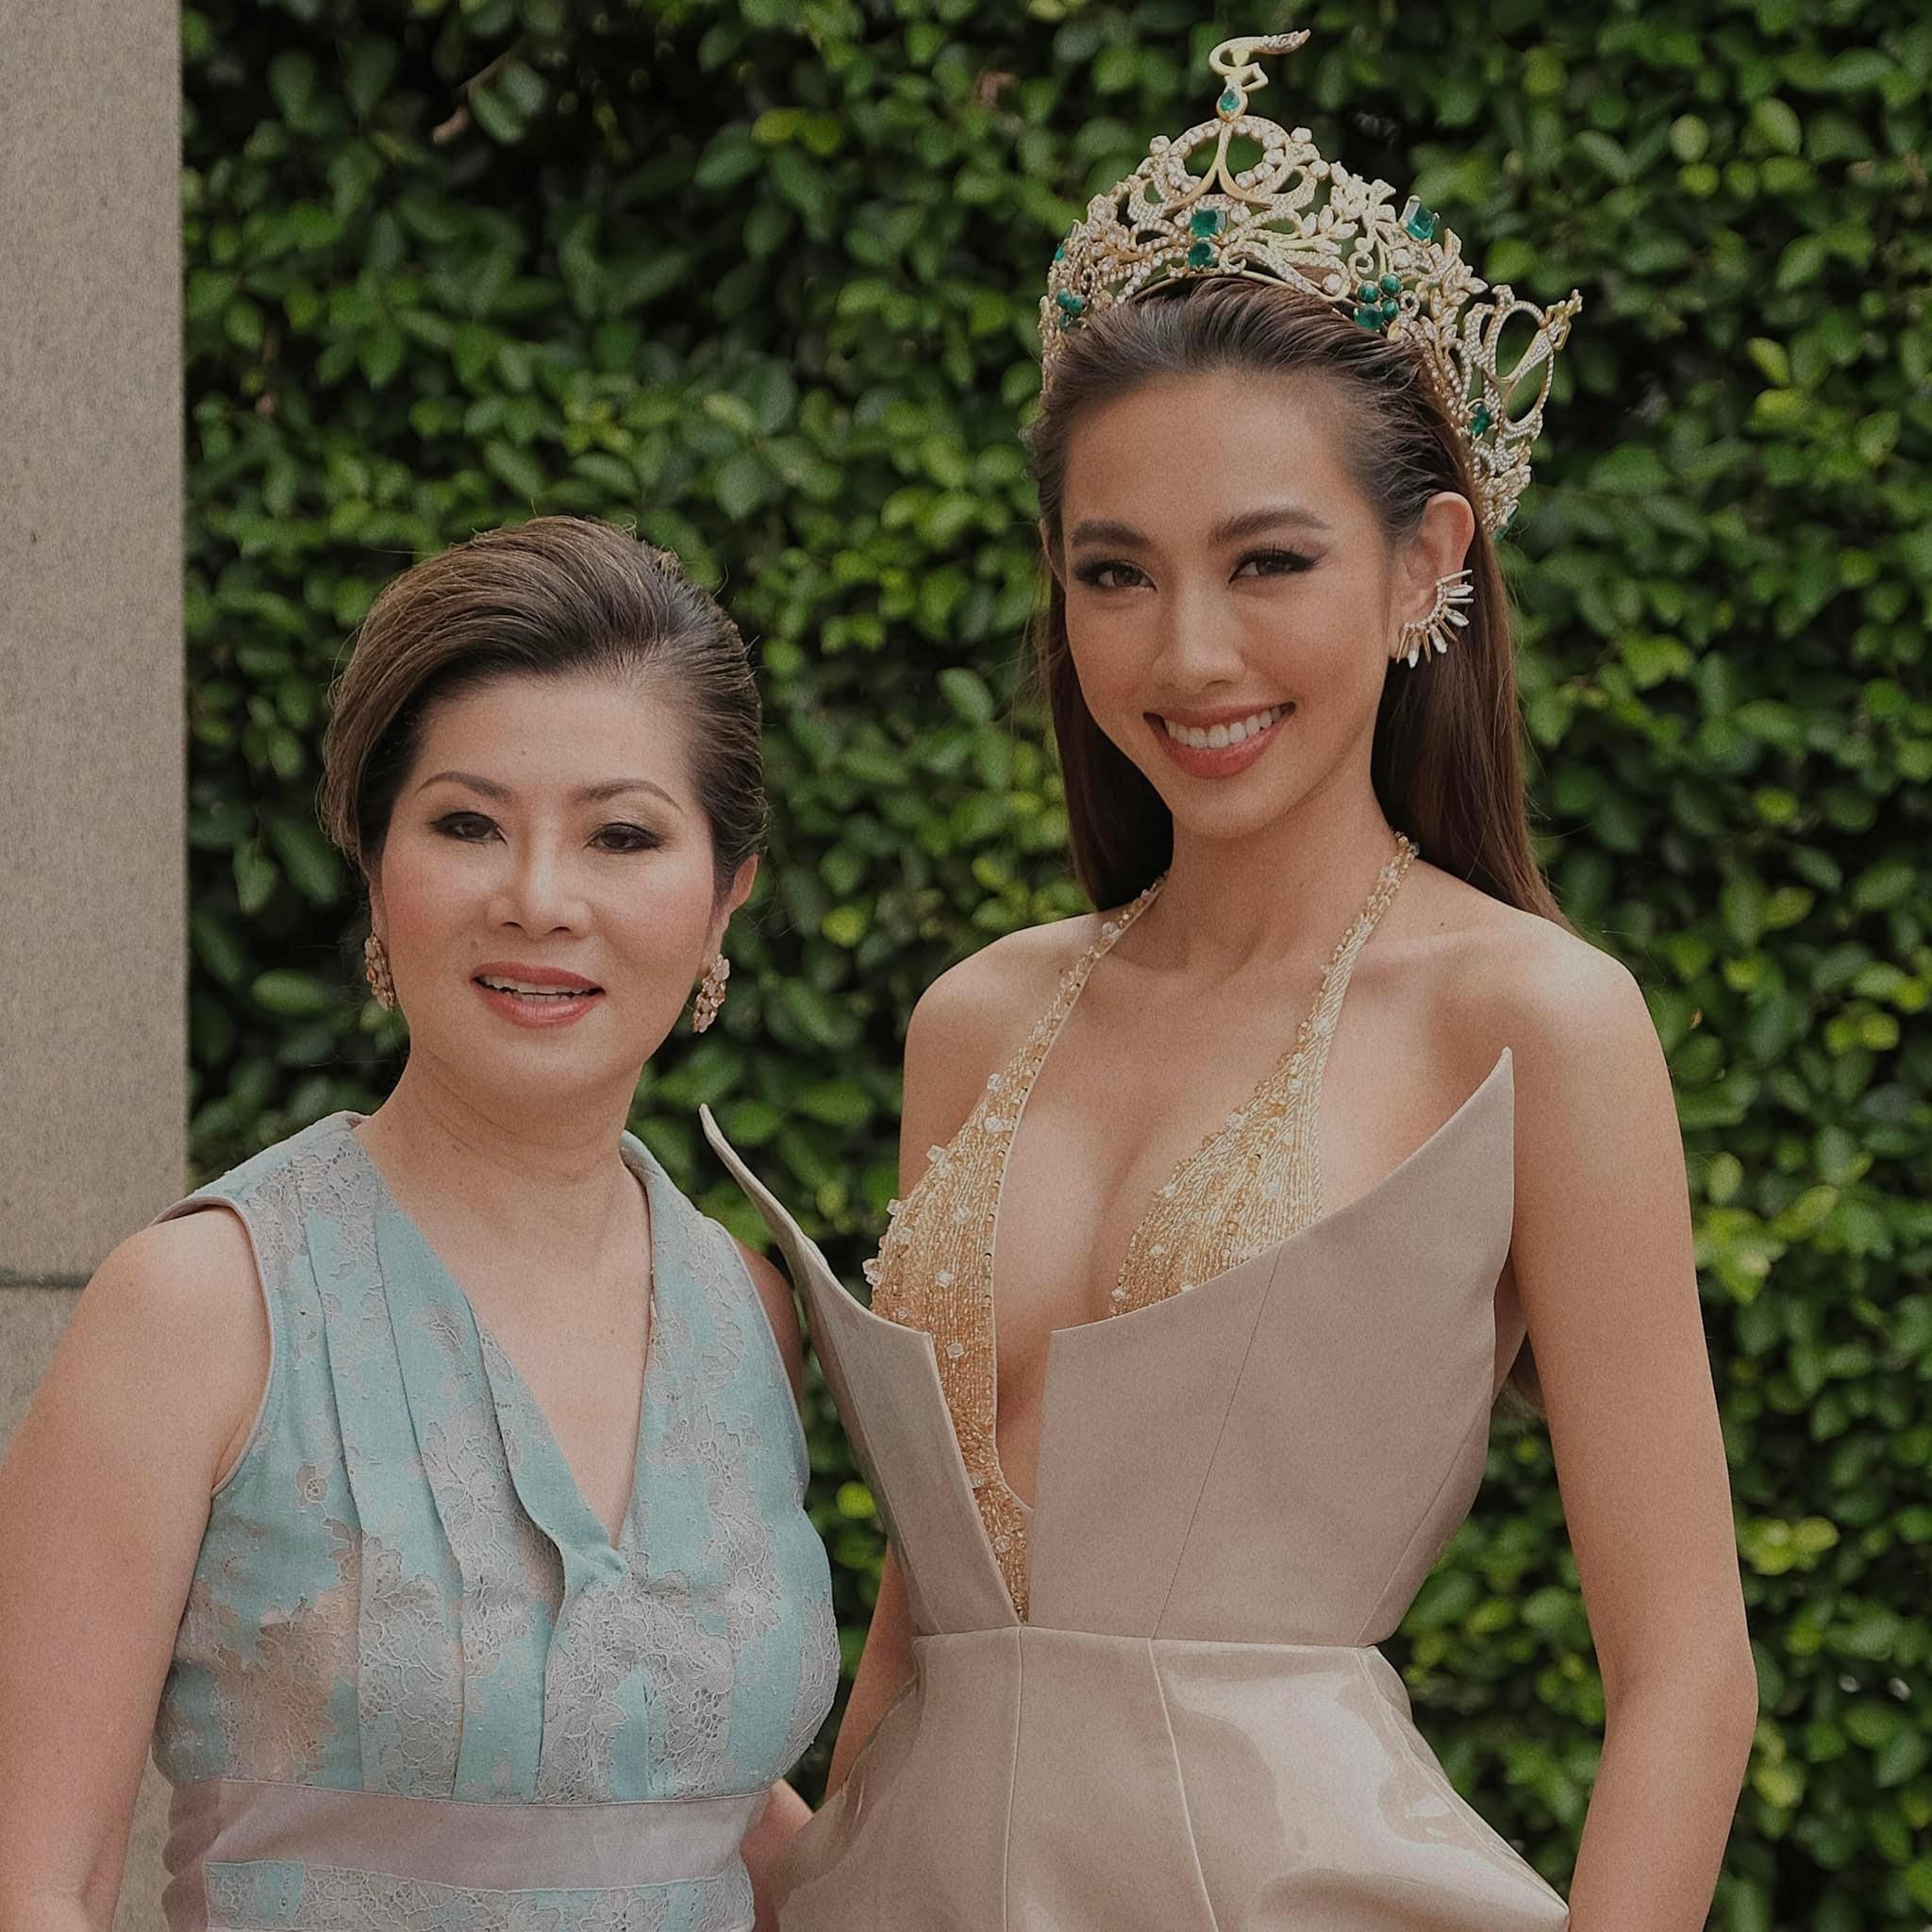 Dù hết nhiệm kỳ, Thùy Tiên vẫn khiến Phó chủ tịch Miss Grand International tự hào vì hành động nhân văn